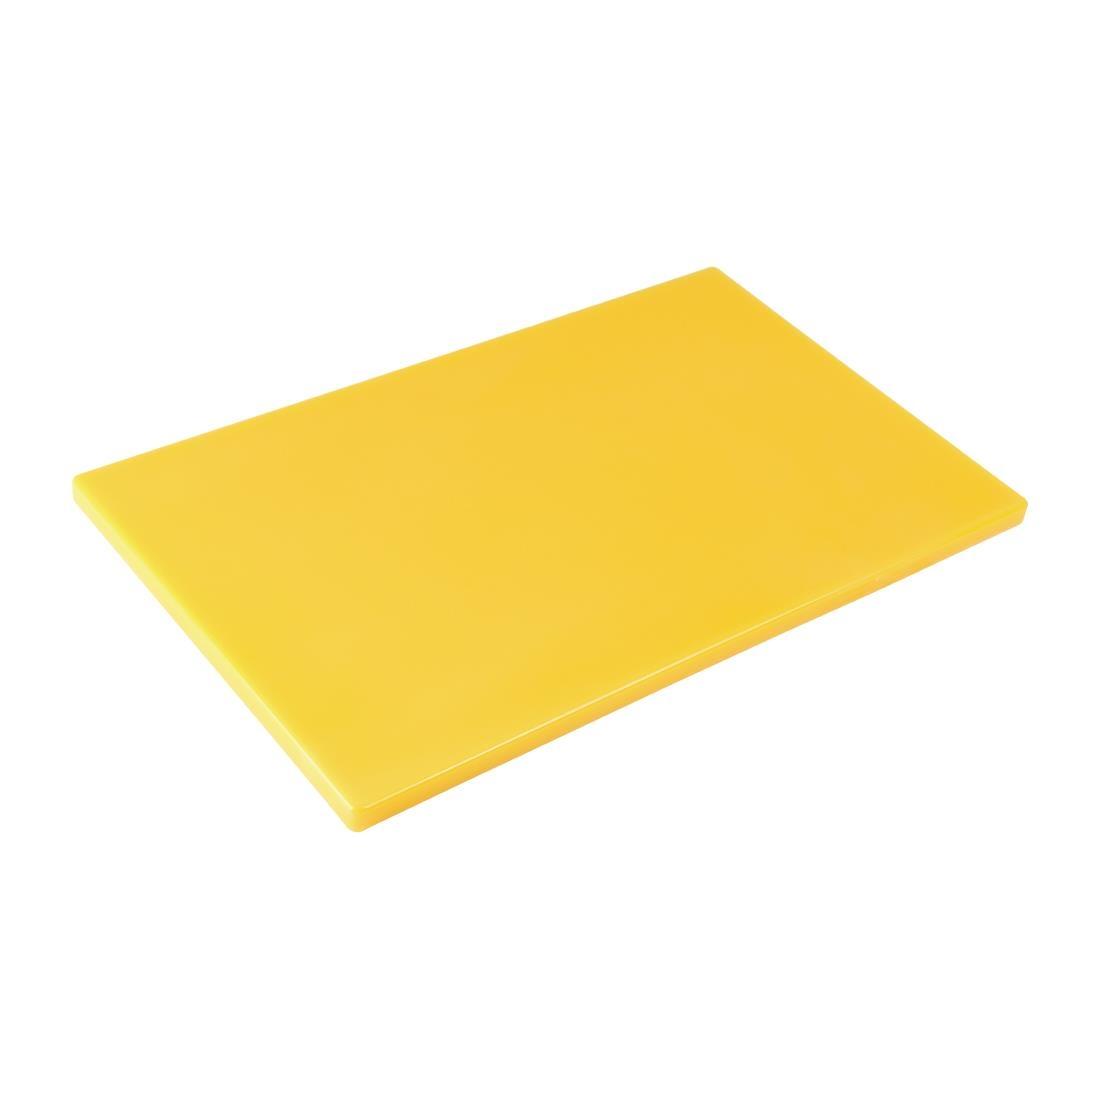 Hygiplas Gastronorm 1/1 Yellow Chopping Board- Each - GL287 - 1